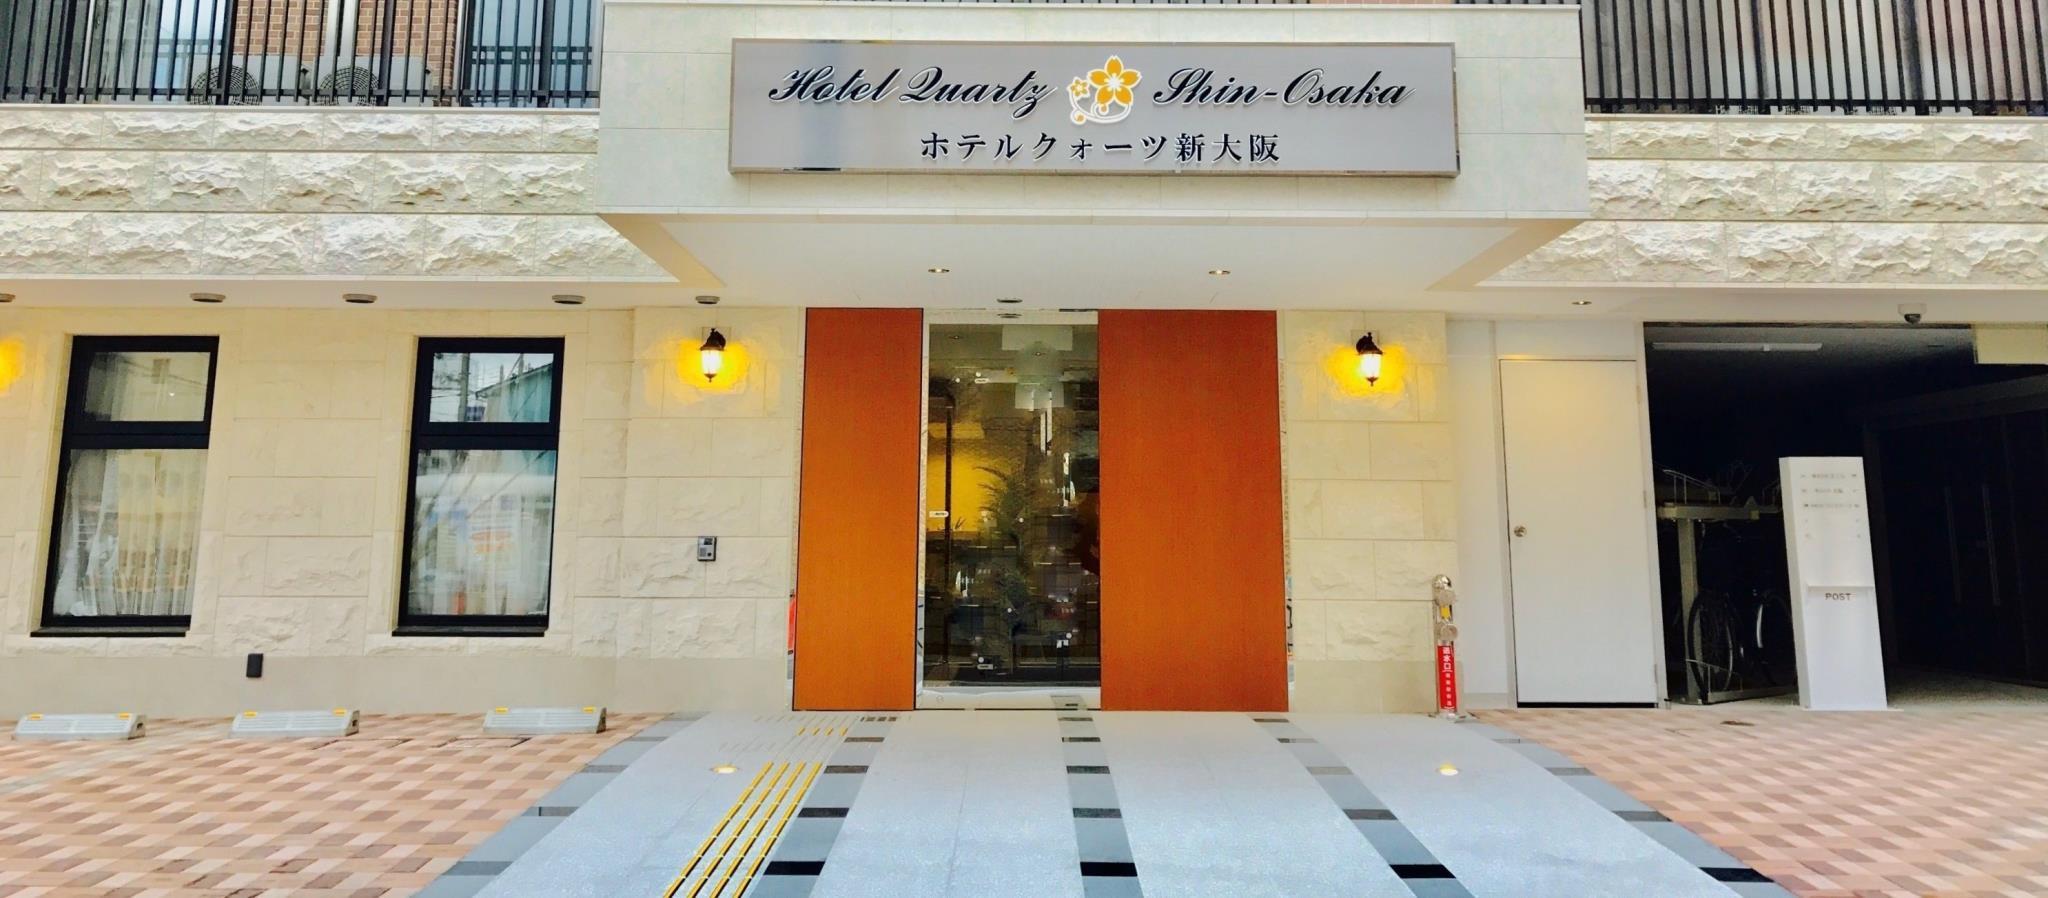 Hotel Quartz Shin-Osaka - 吹田市